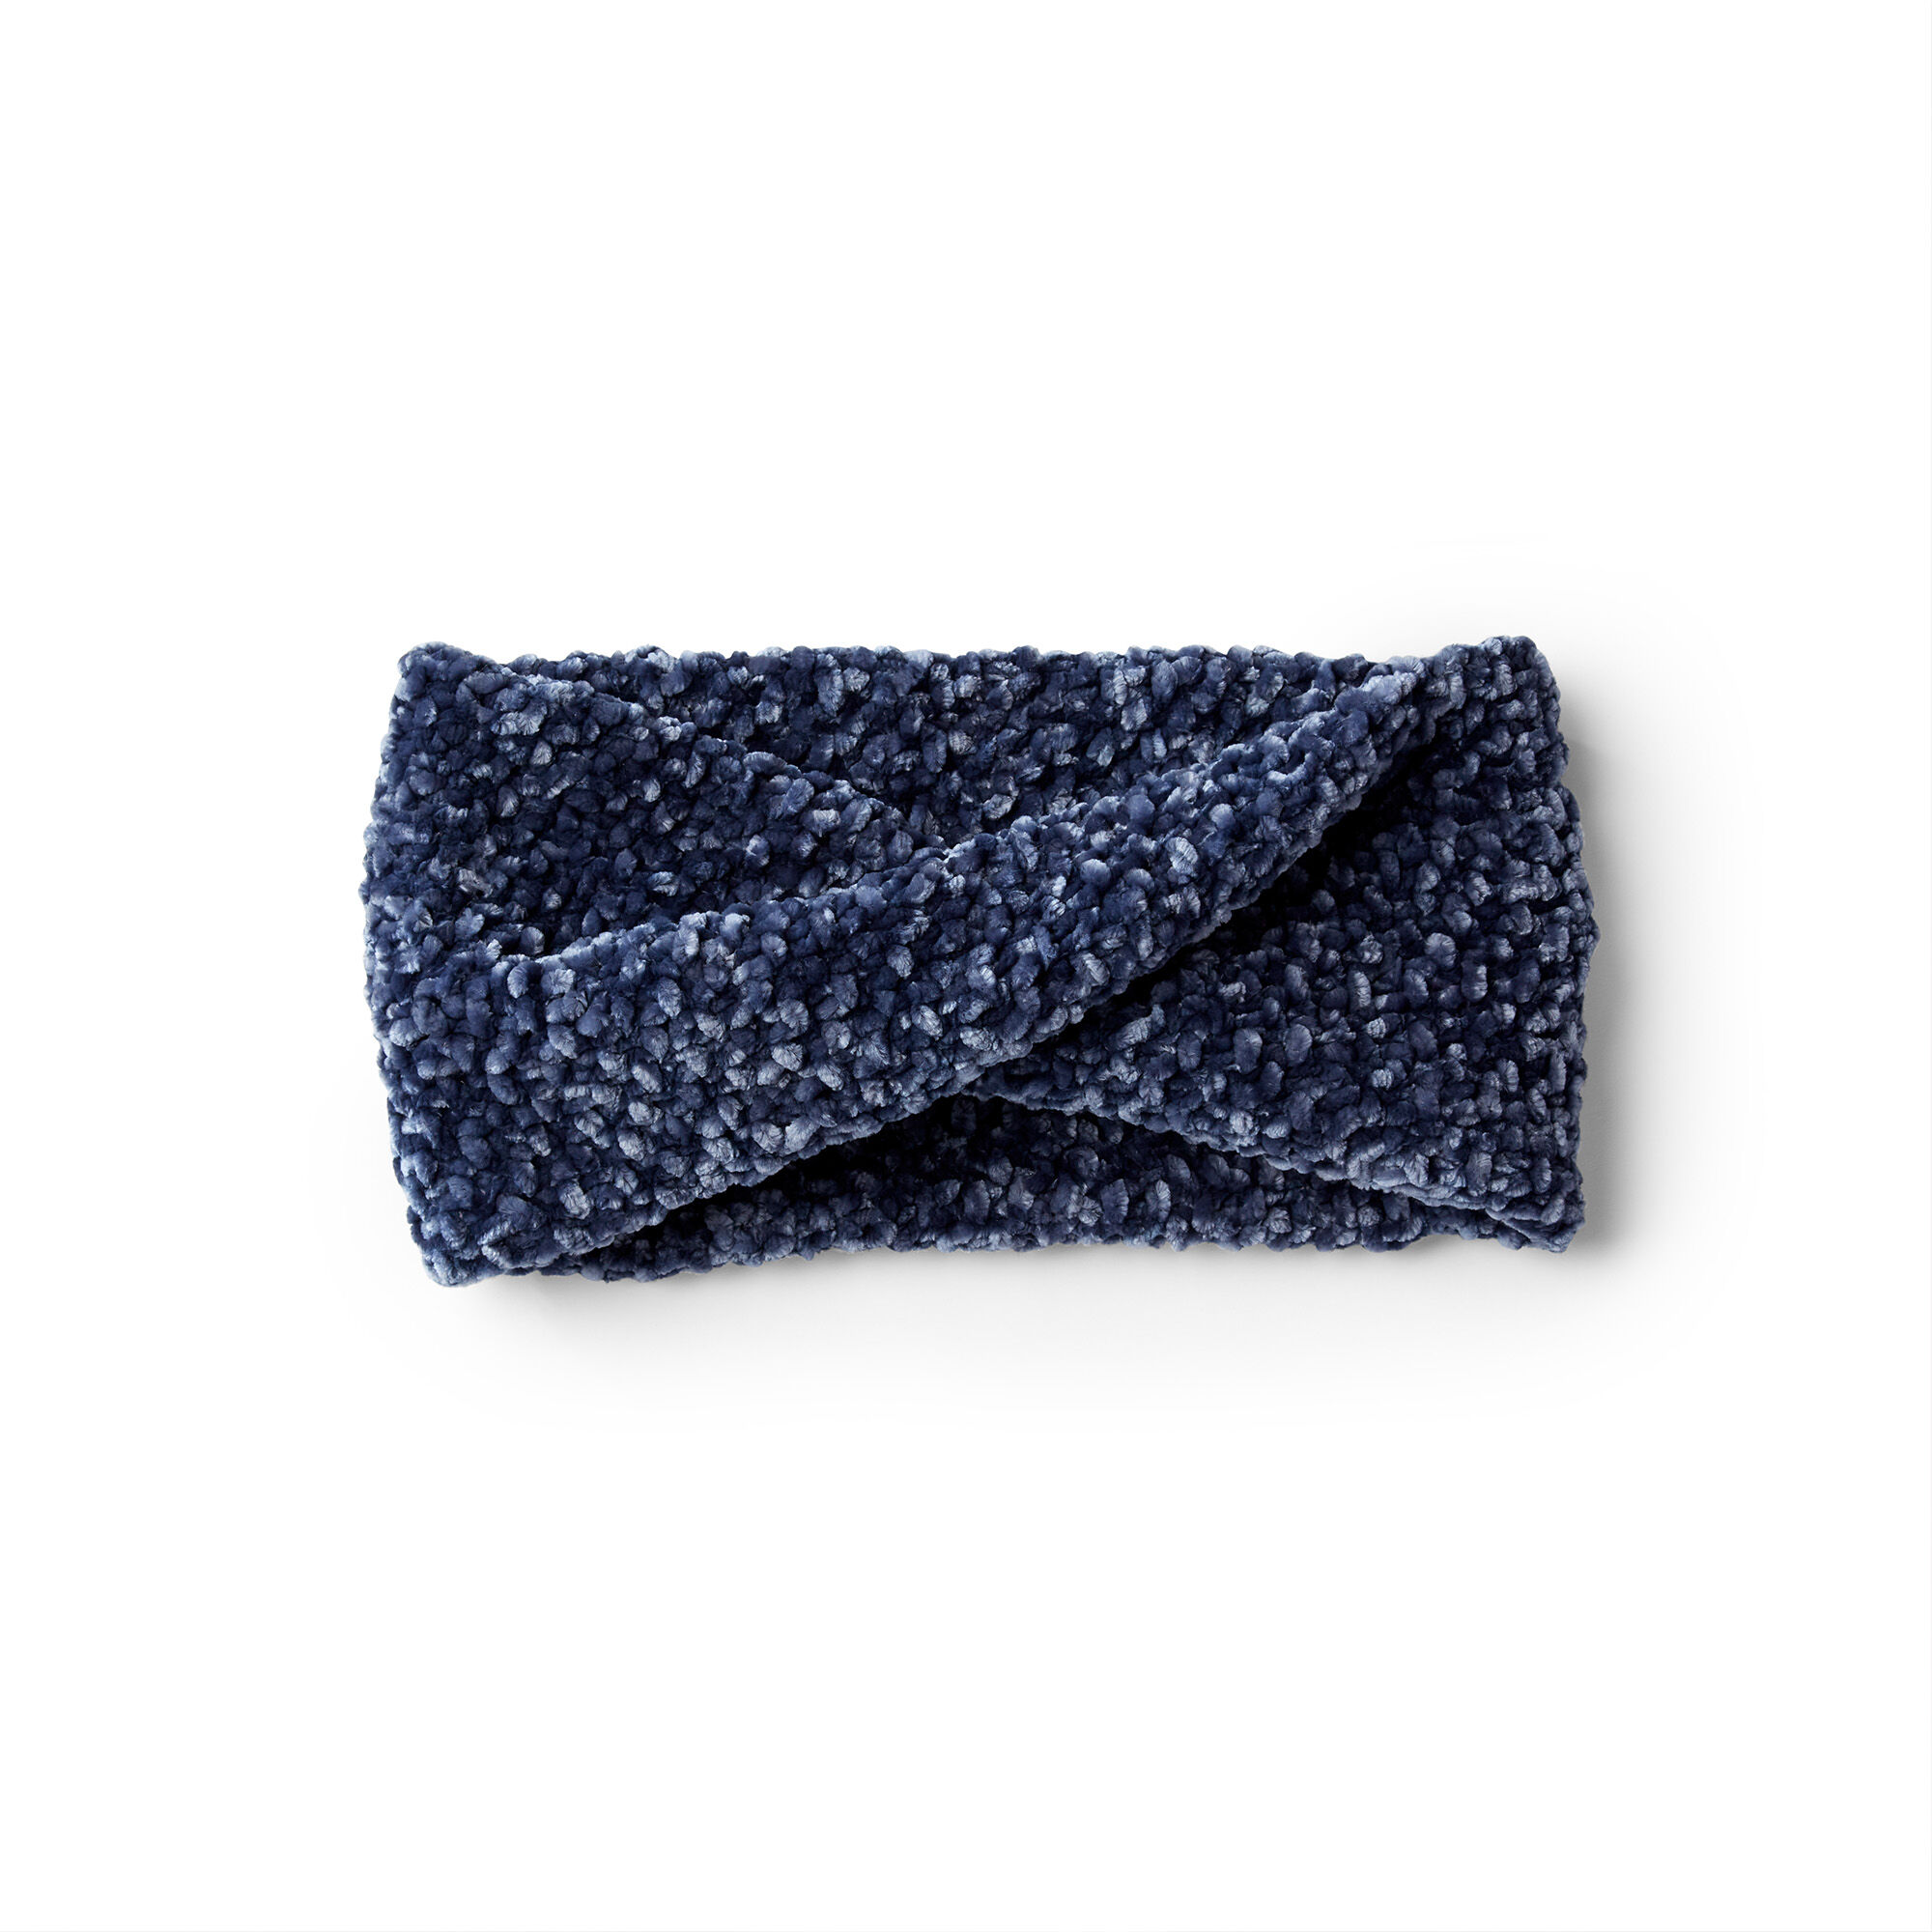 How To Make Bernat Velvet Twist Crochet Blanket Online